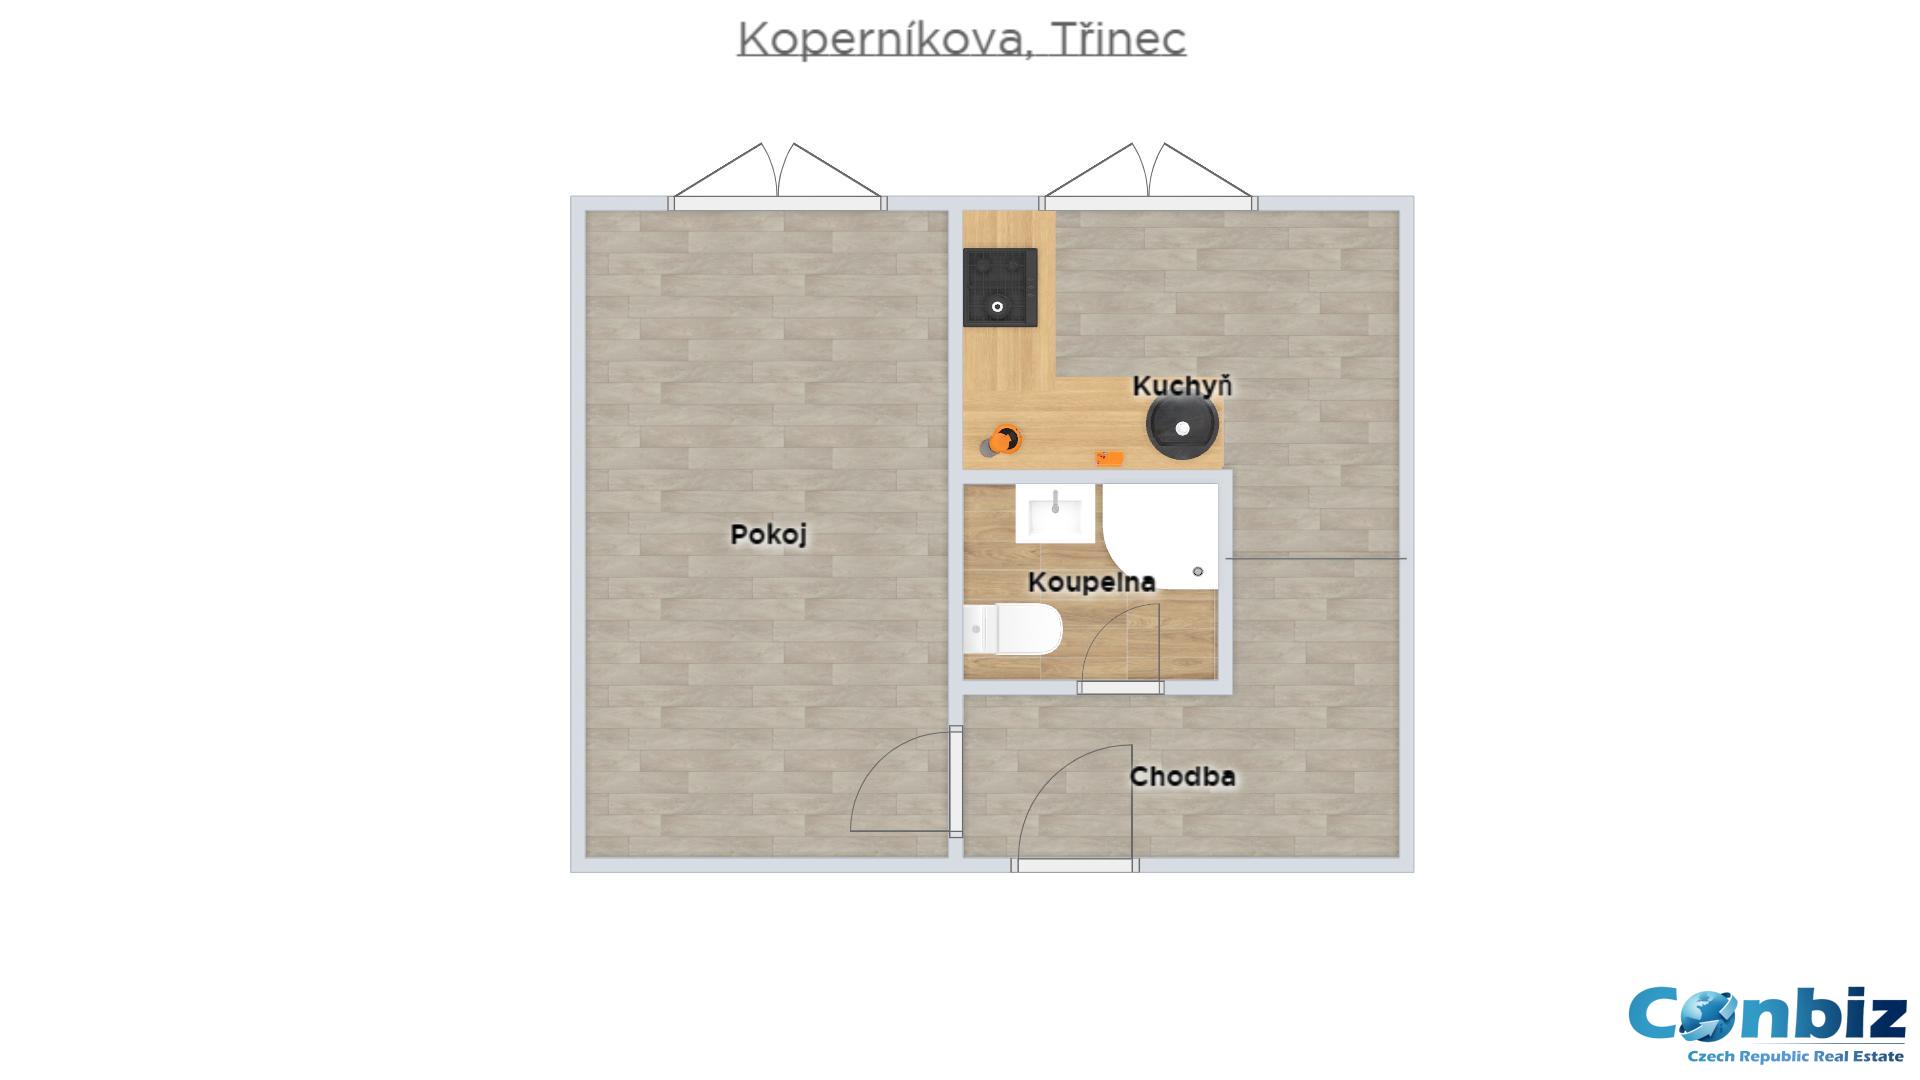 Prodej družstevního bytu 1+1 na ulici Kopernikova v Třinci , obrázek č. 2